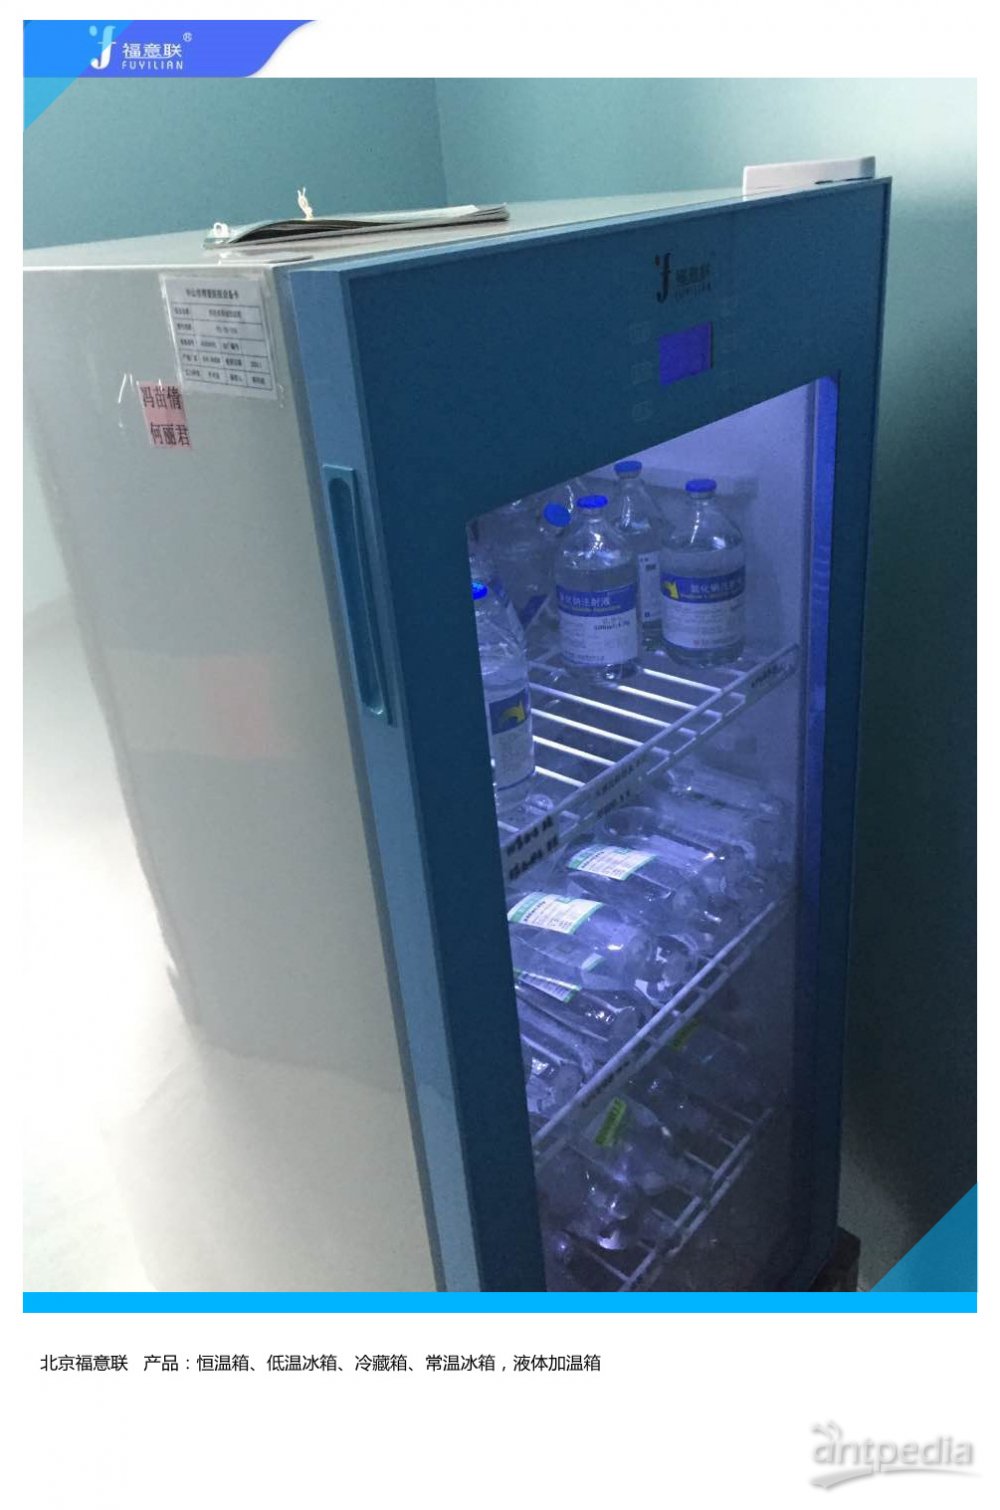 人非霍奇金淋巴瘤细胞菌种冷藏箱FYL-YS-430L